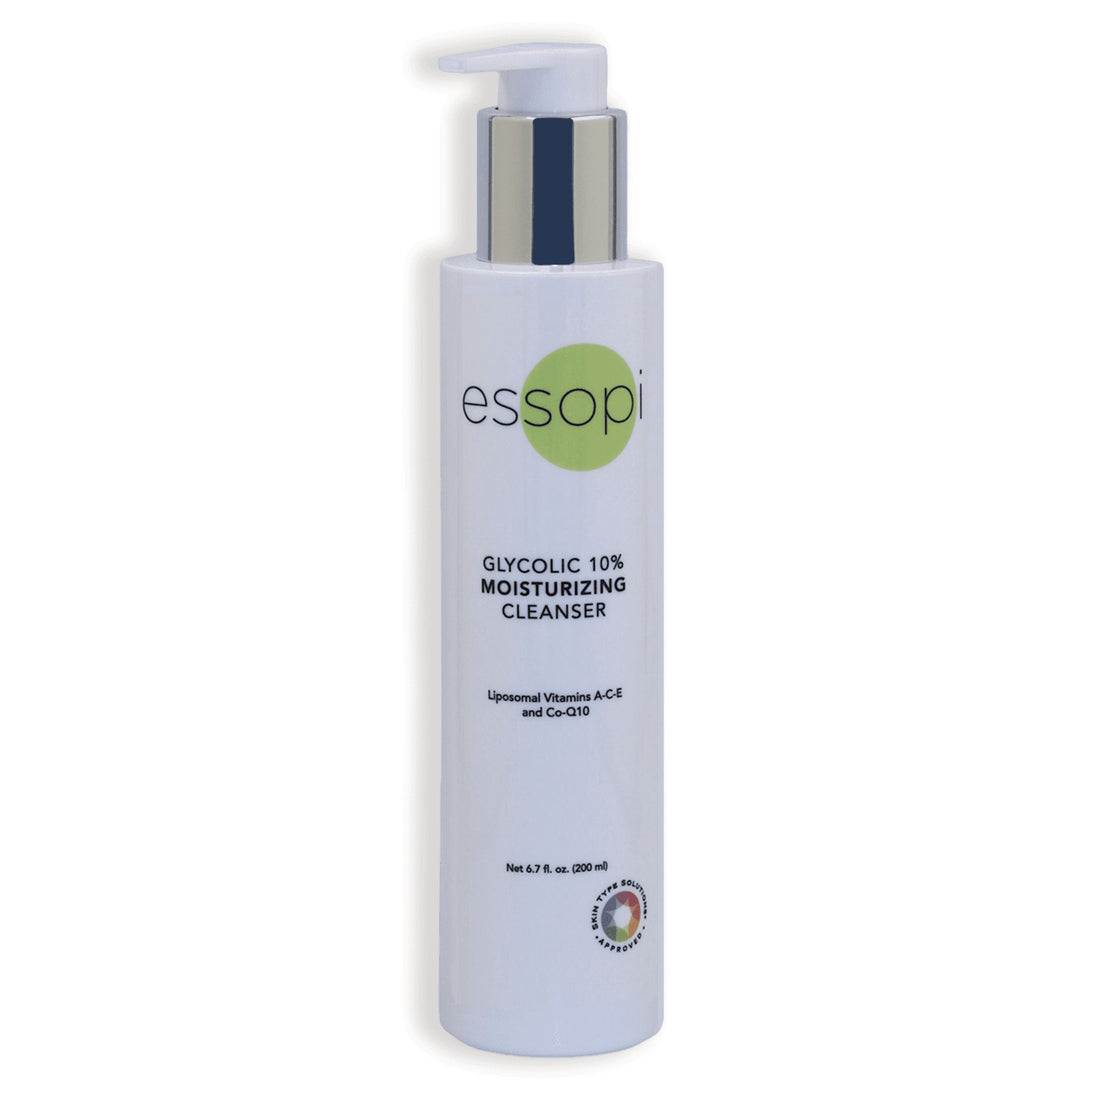 Essopi Glycolic 10 moisturizing cleanser main photo